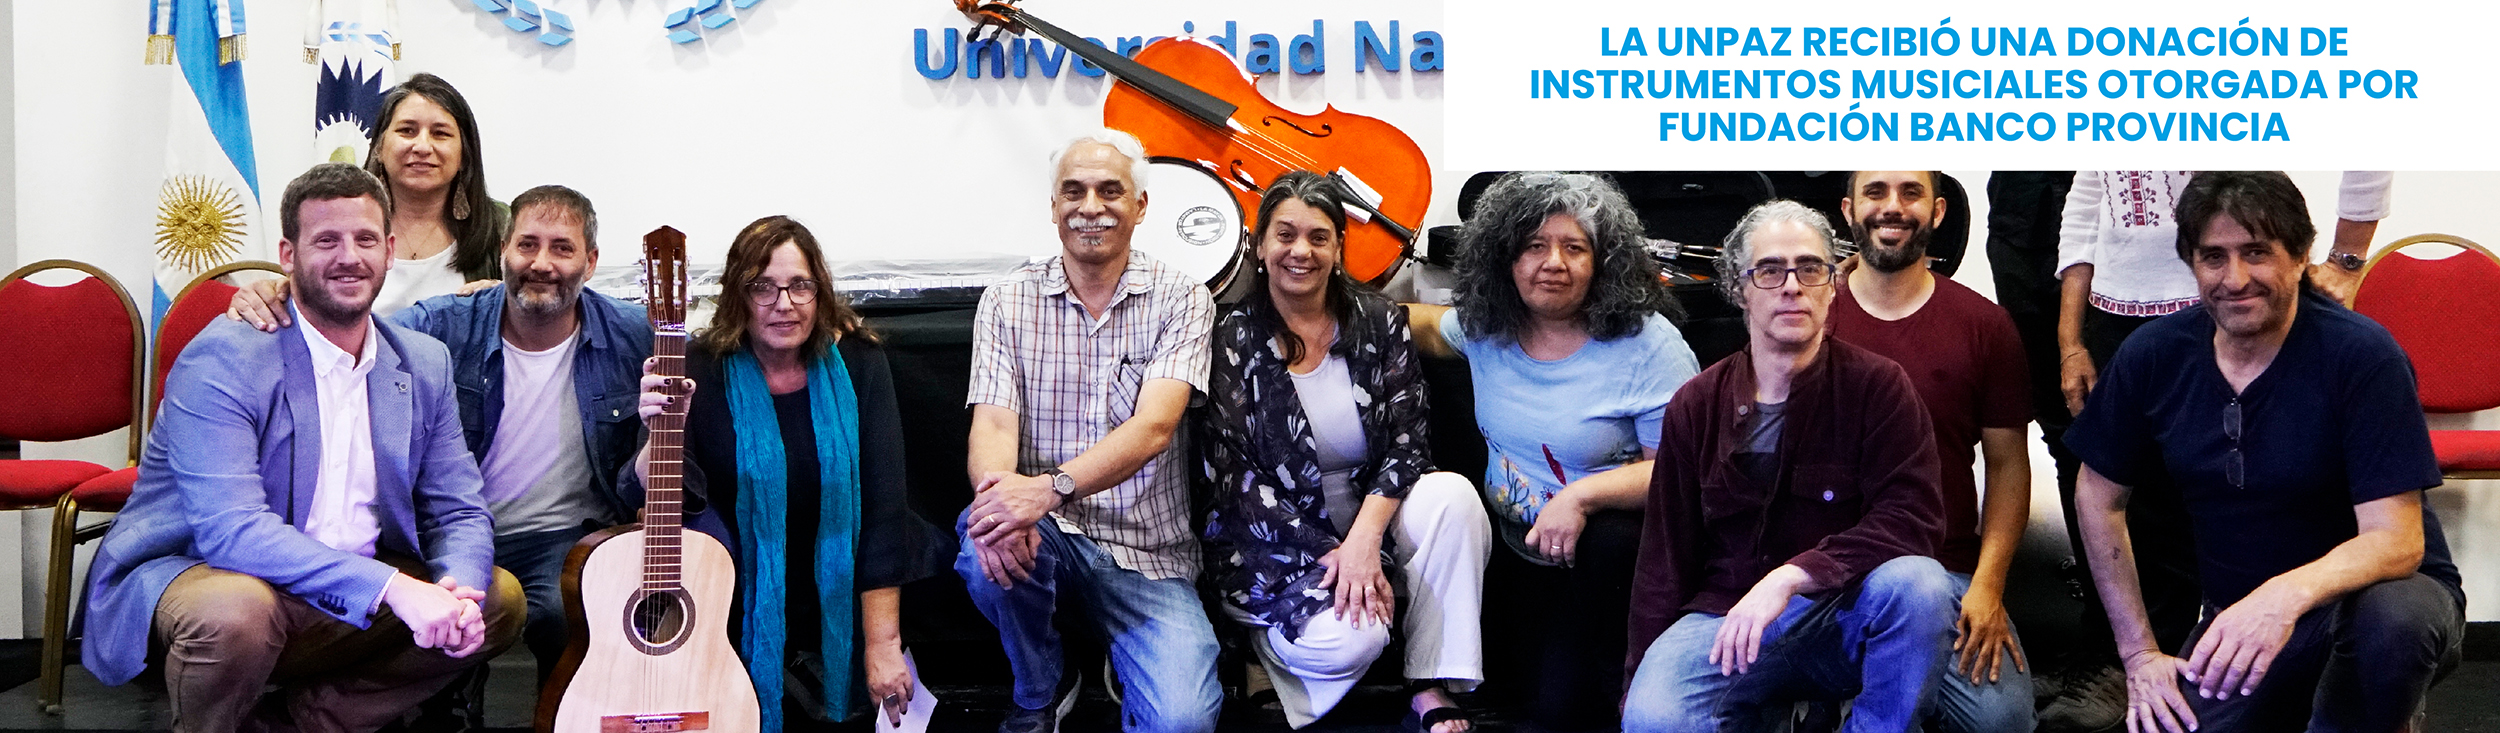 La UNPAZ recibió una donación de instrumentos musiciales otorgada por Fundación Banco Provincia